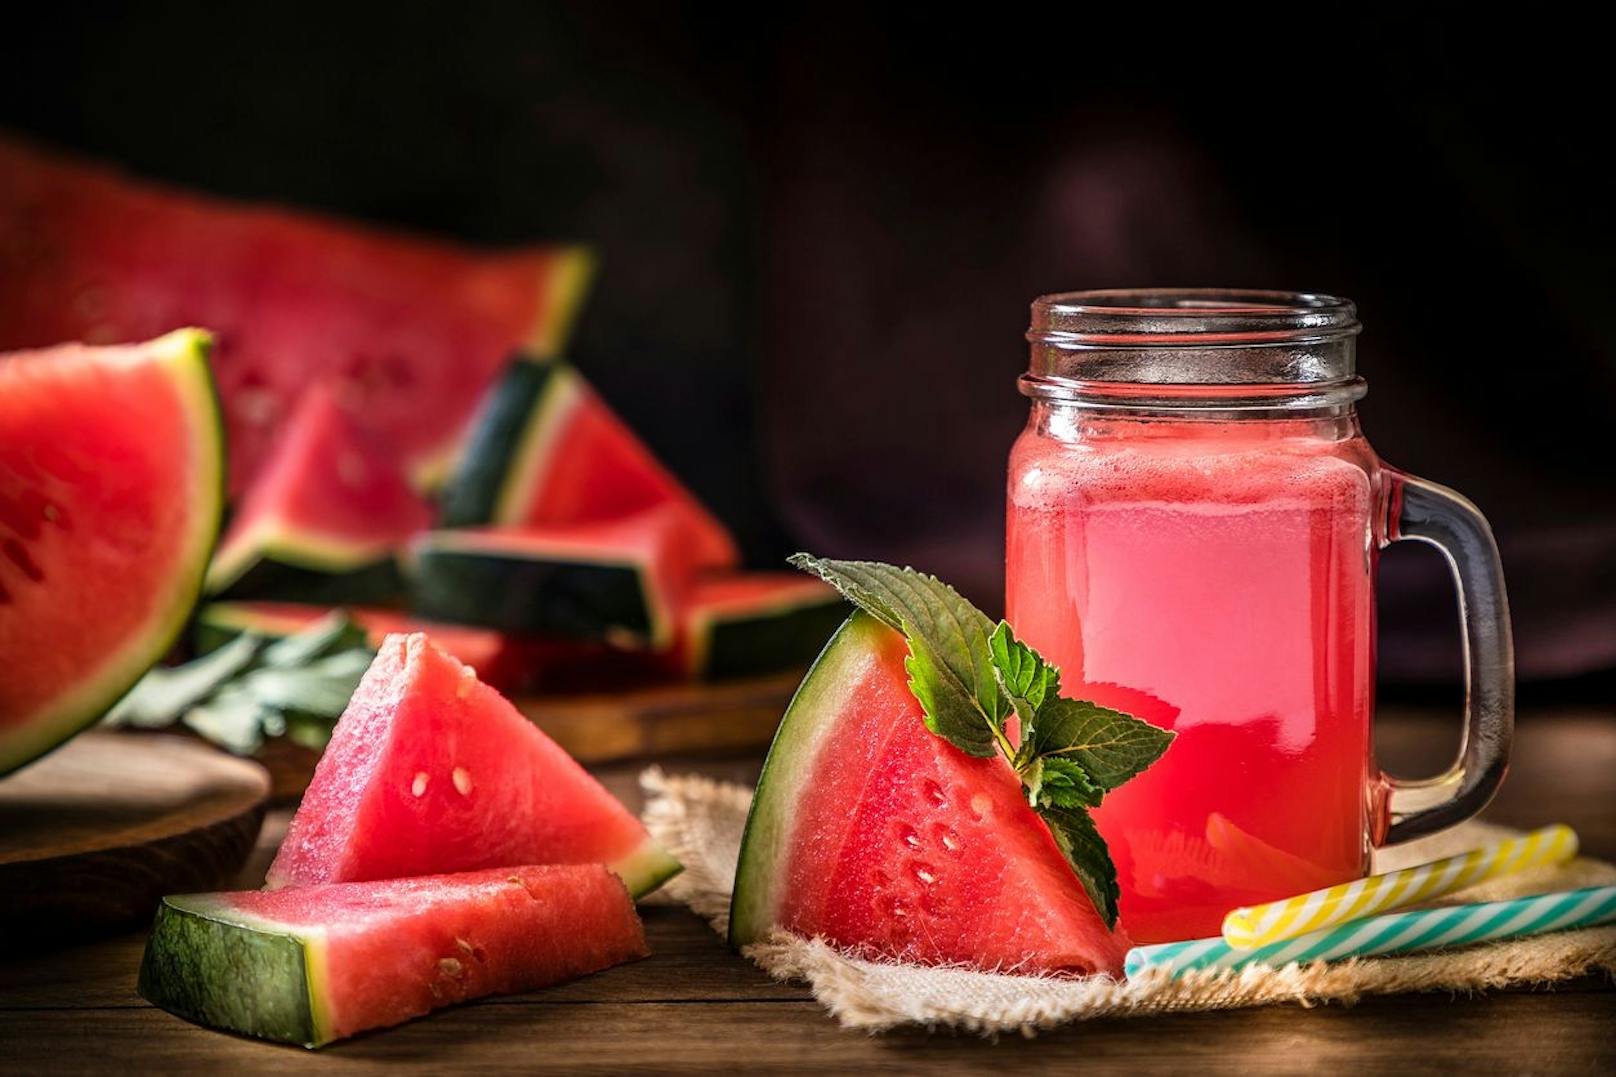 Trinken und Essen in einem: Wassermelone.